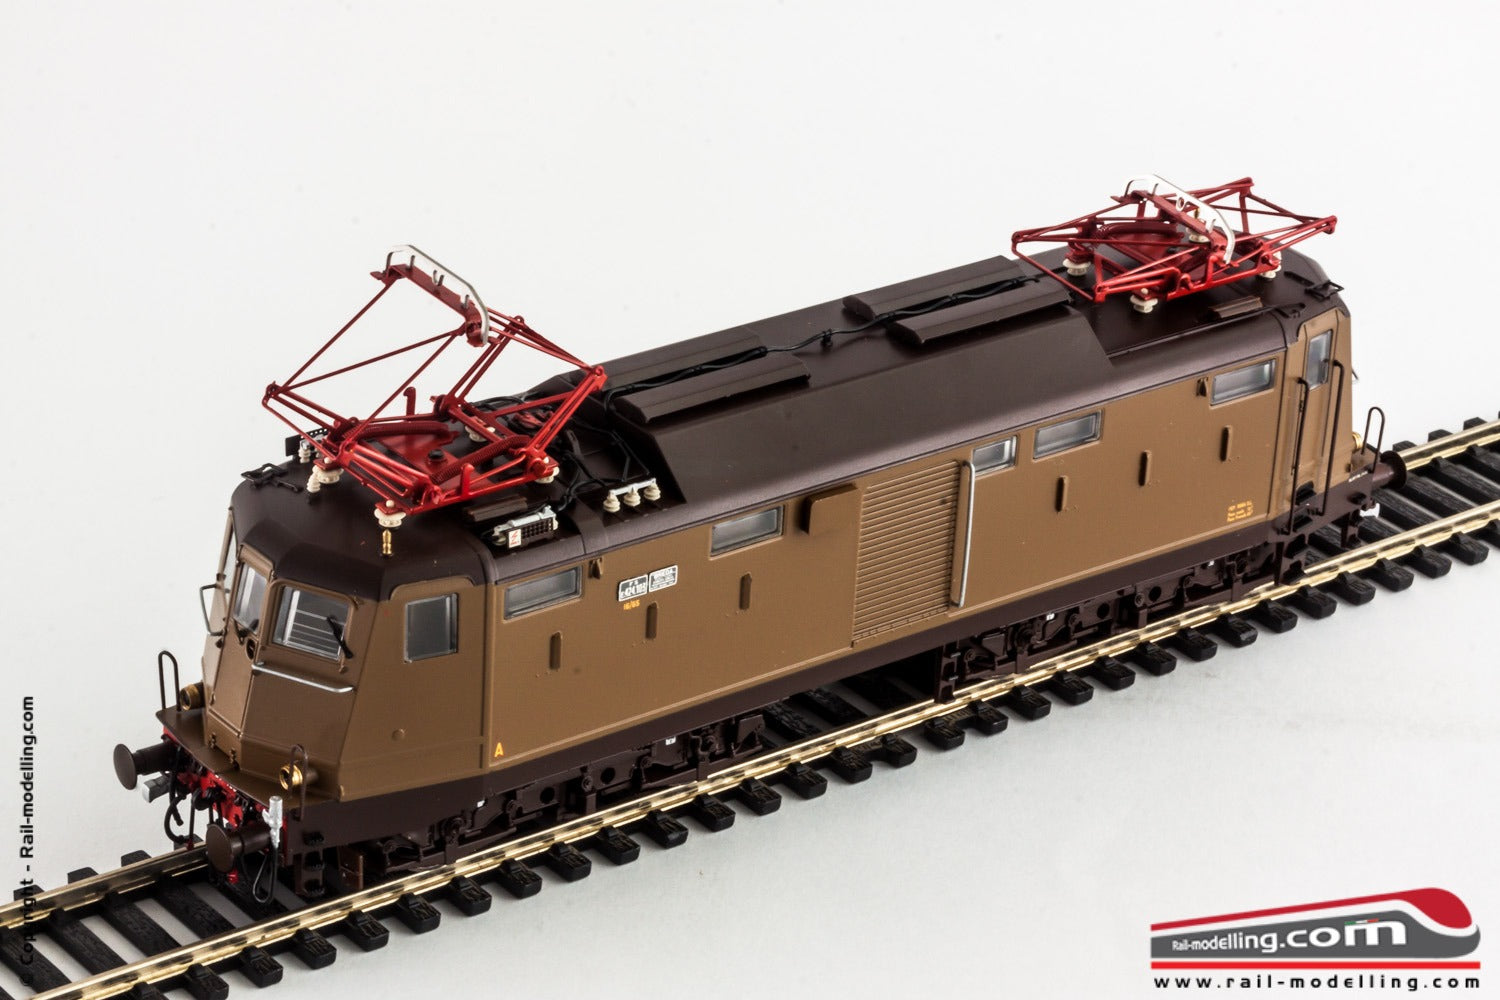 RIVAROSSI HR2500 - H0 1:87 - Locomotiva elettrica FS E424 103 Breda porte frontali e separatore D'Arbela 